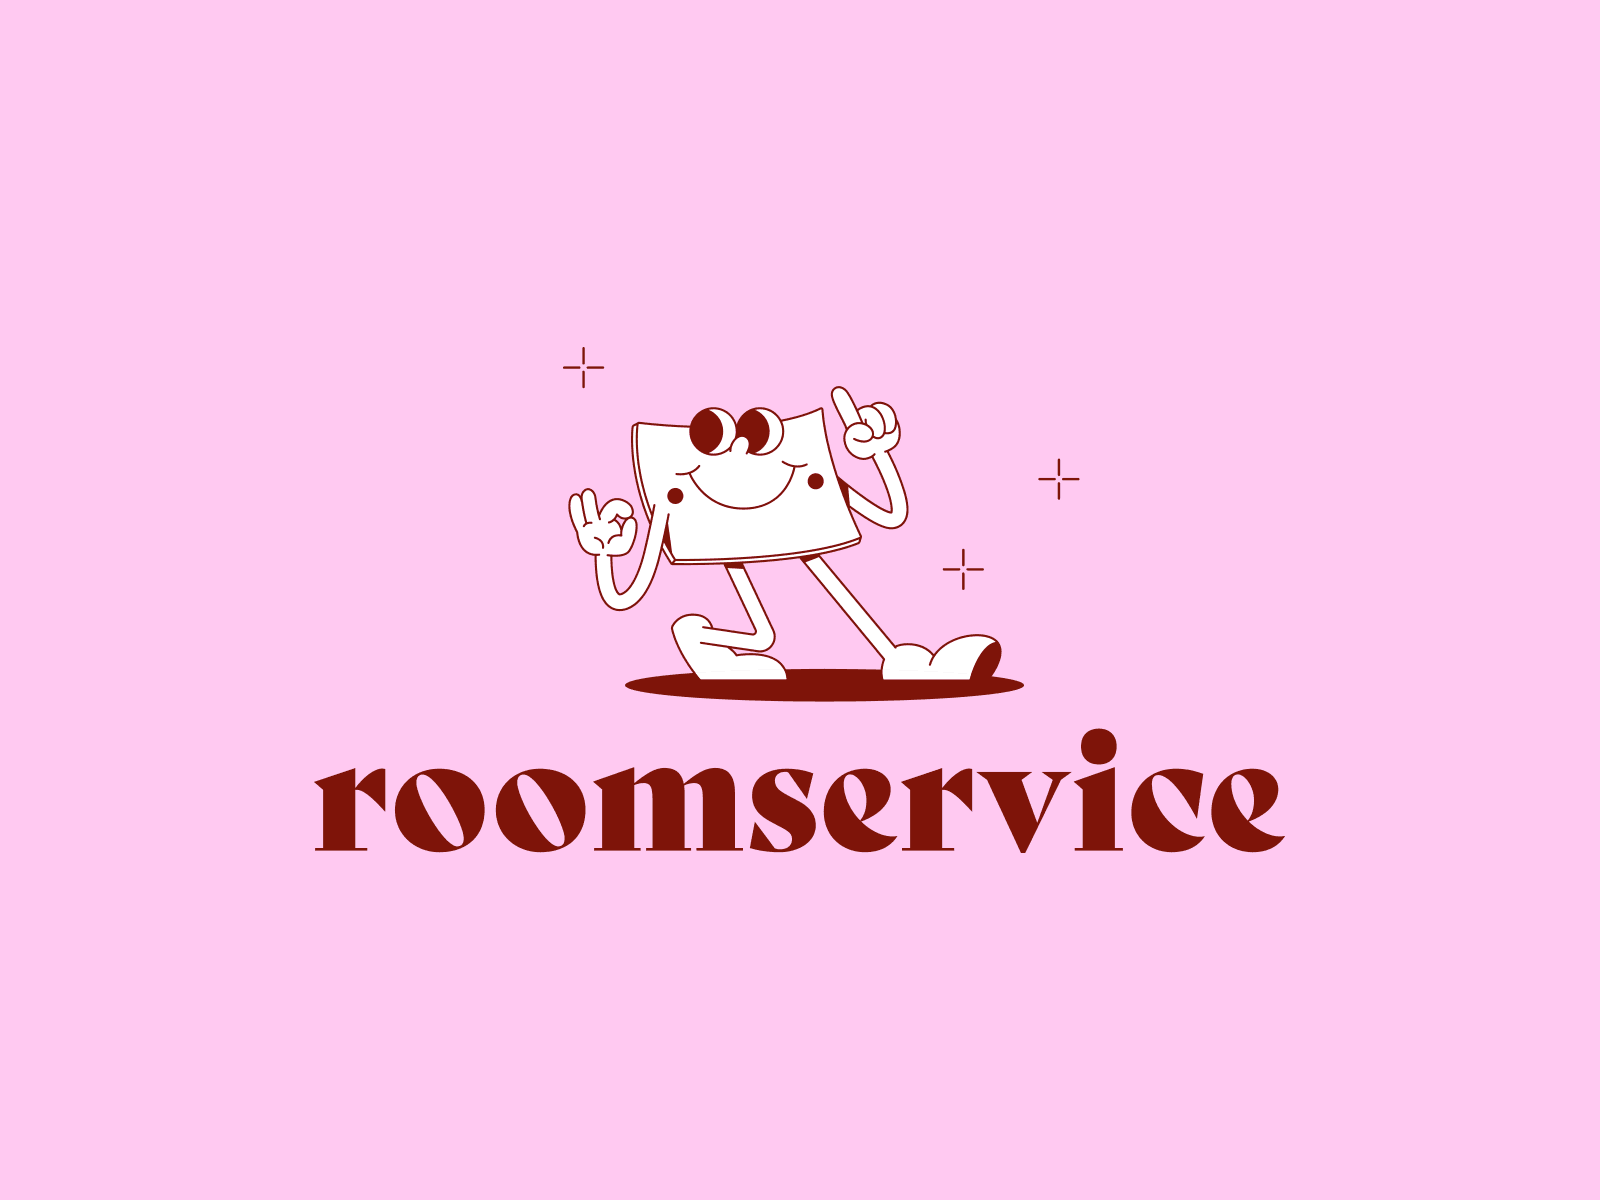 Roomservice logo fun branding color palette fun illustration logo mascot retro